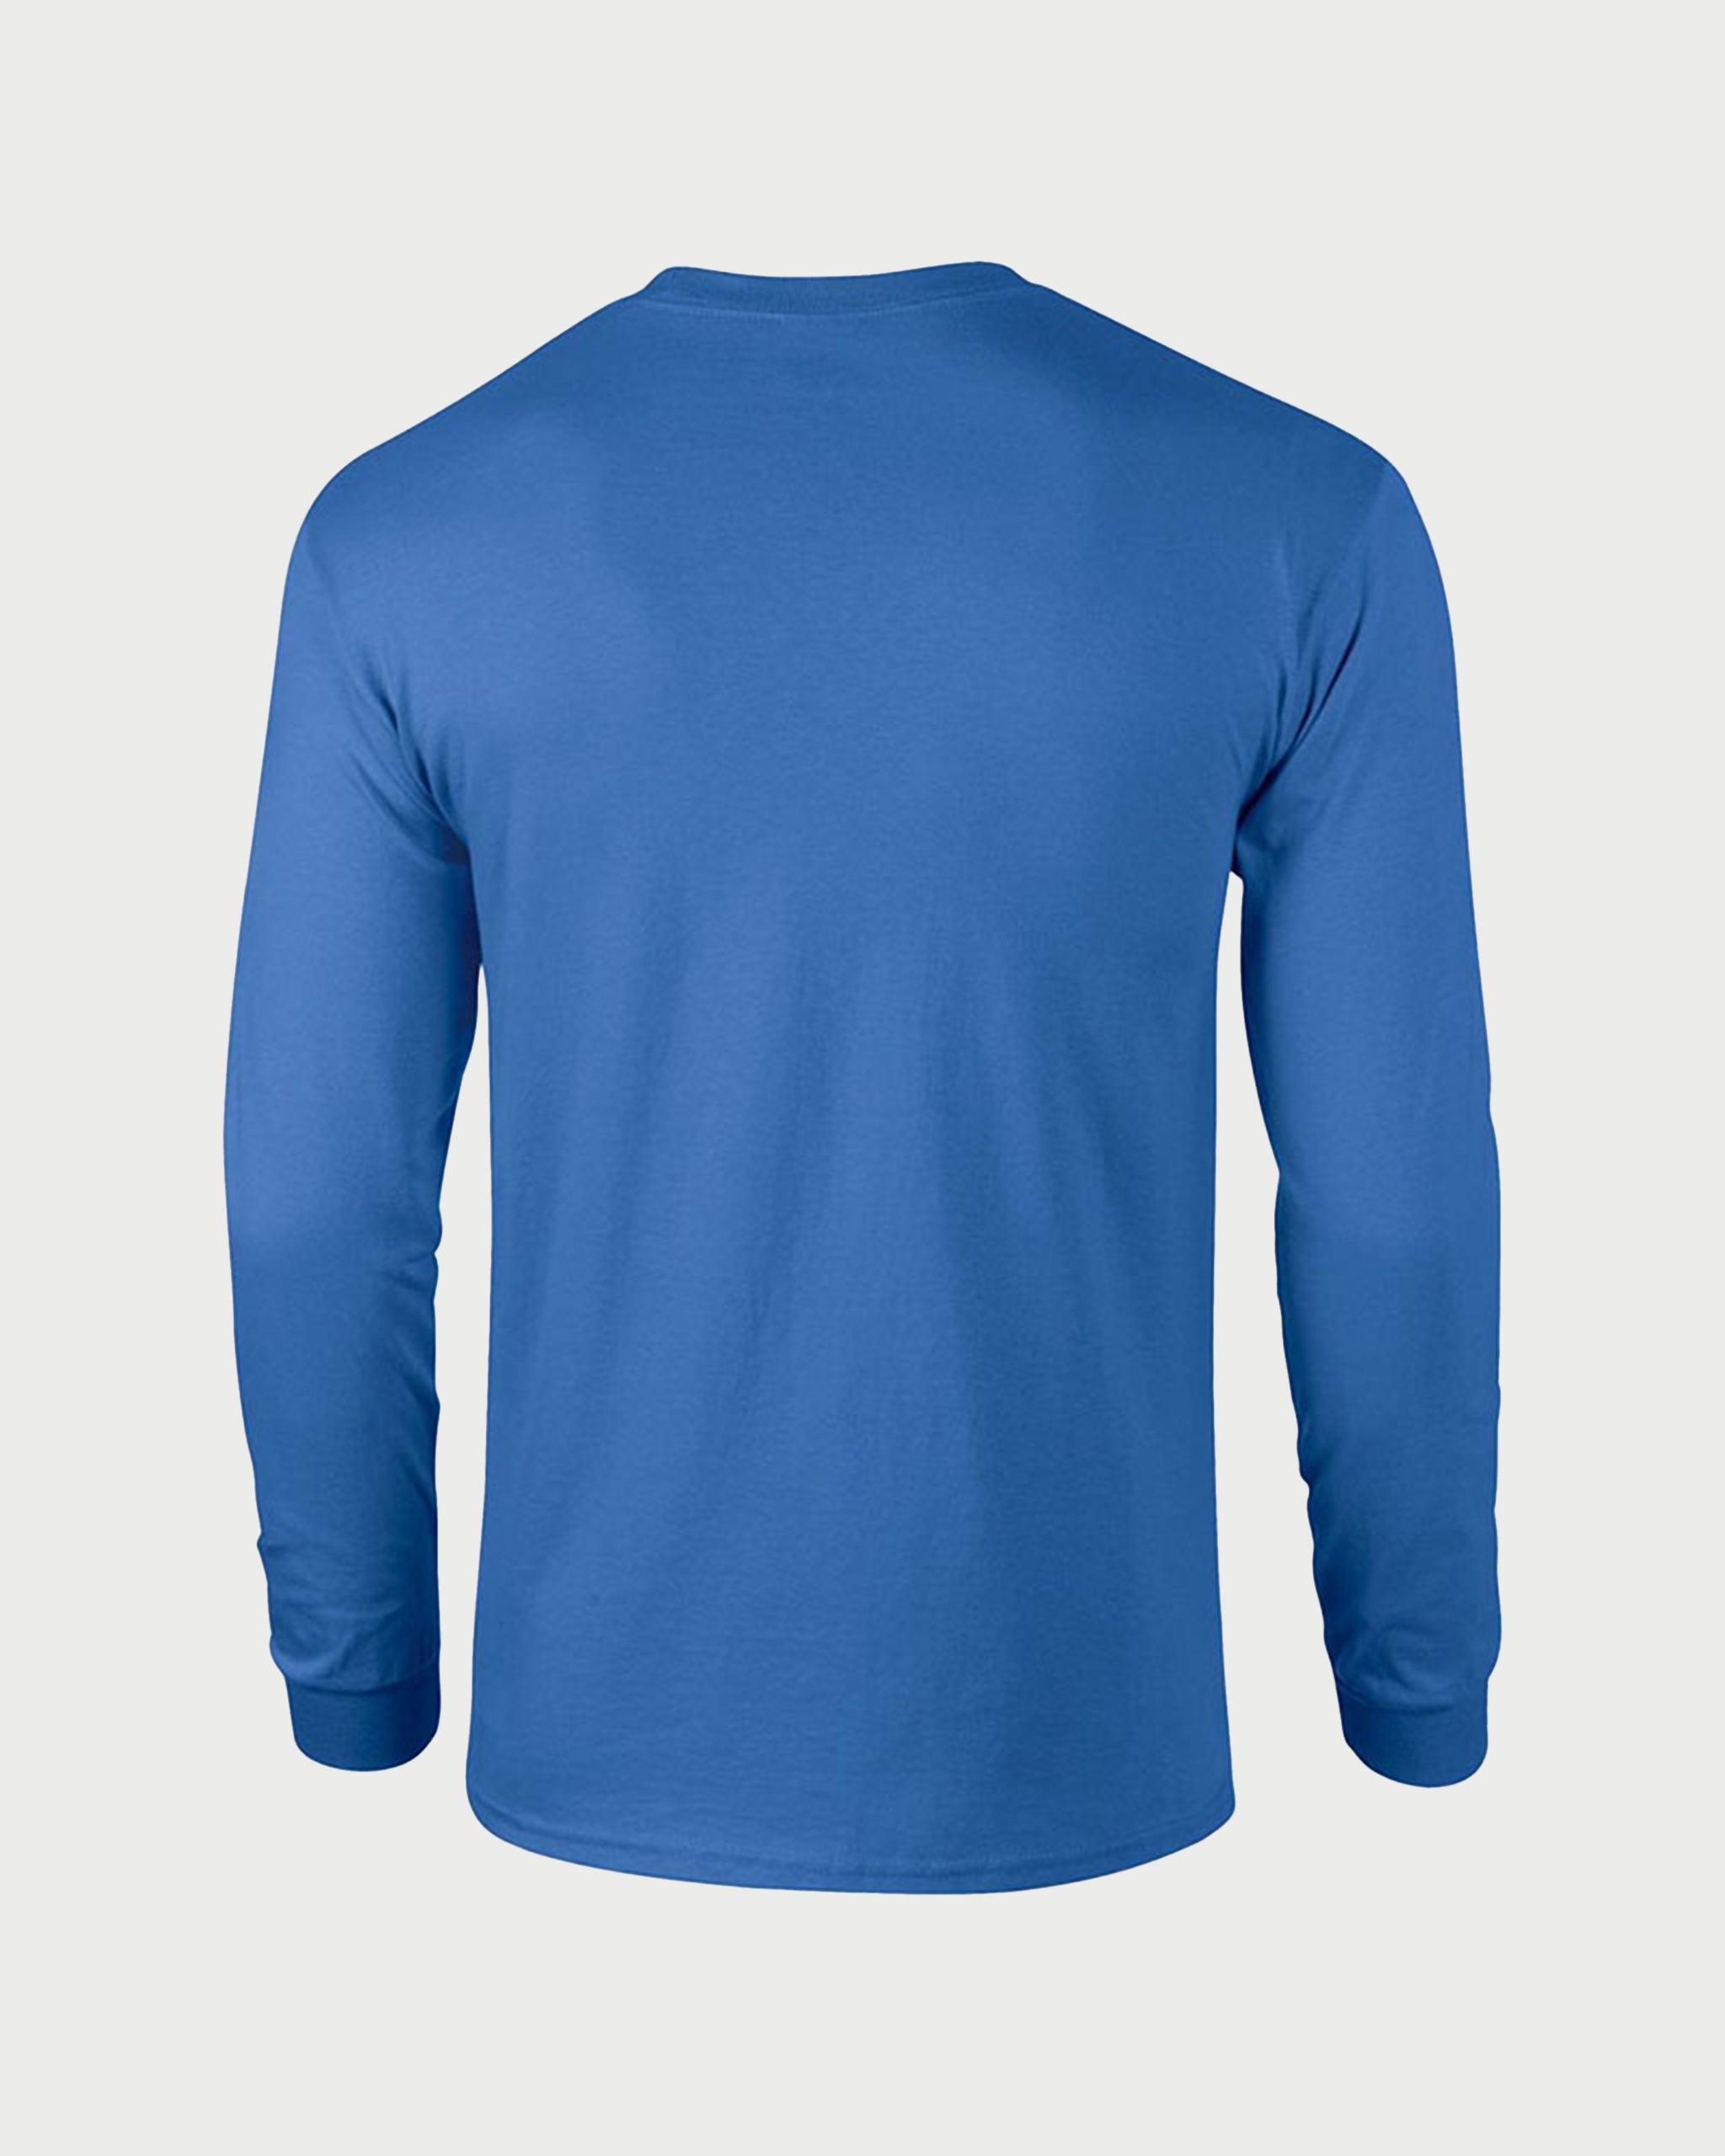 B BLUE - bluza barbateasca din bumbac premium